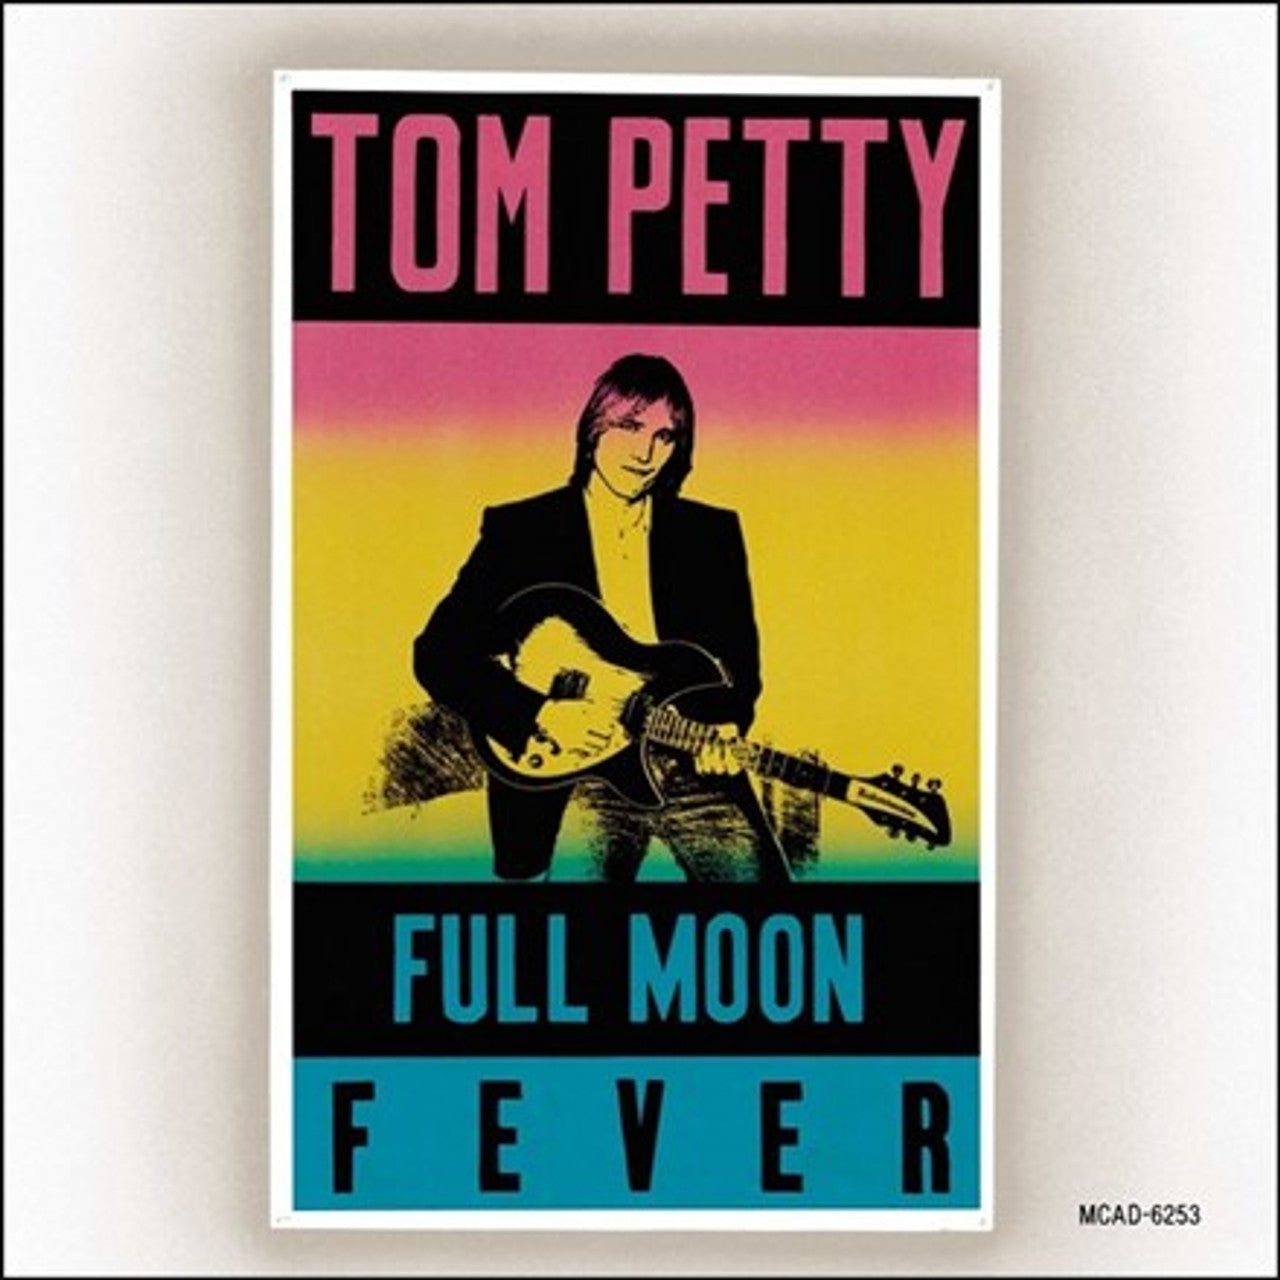 TOM PETTY - FULL MOON FEVER - VINYL LP